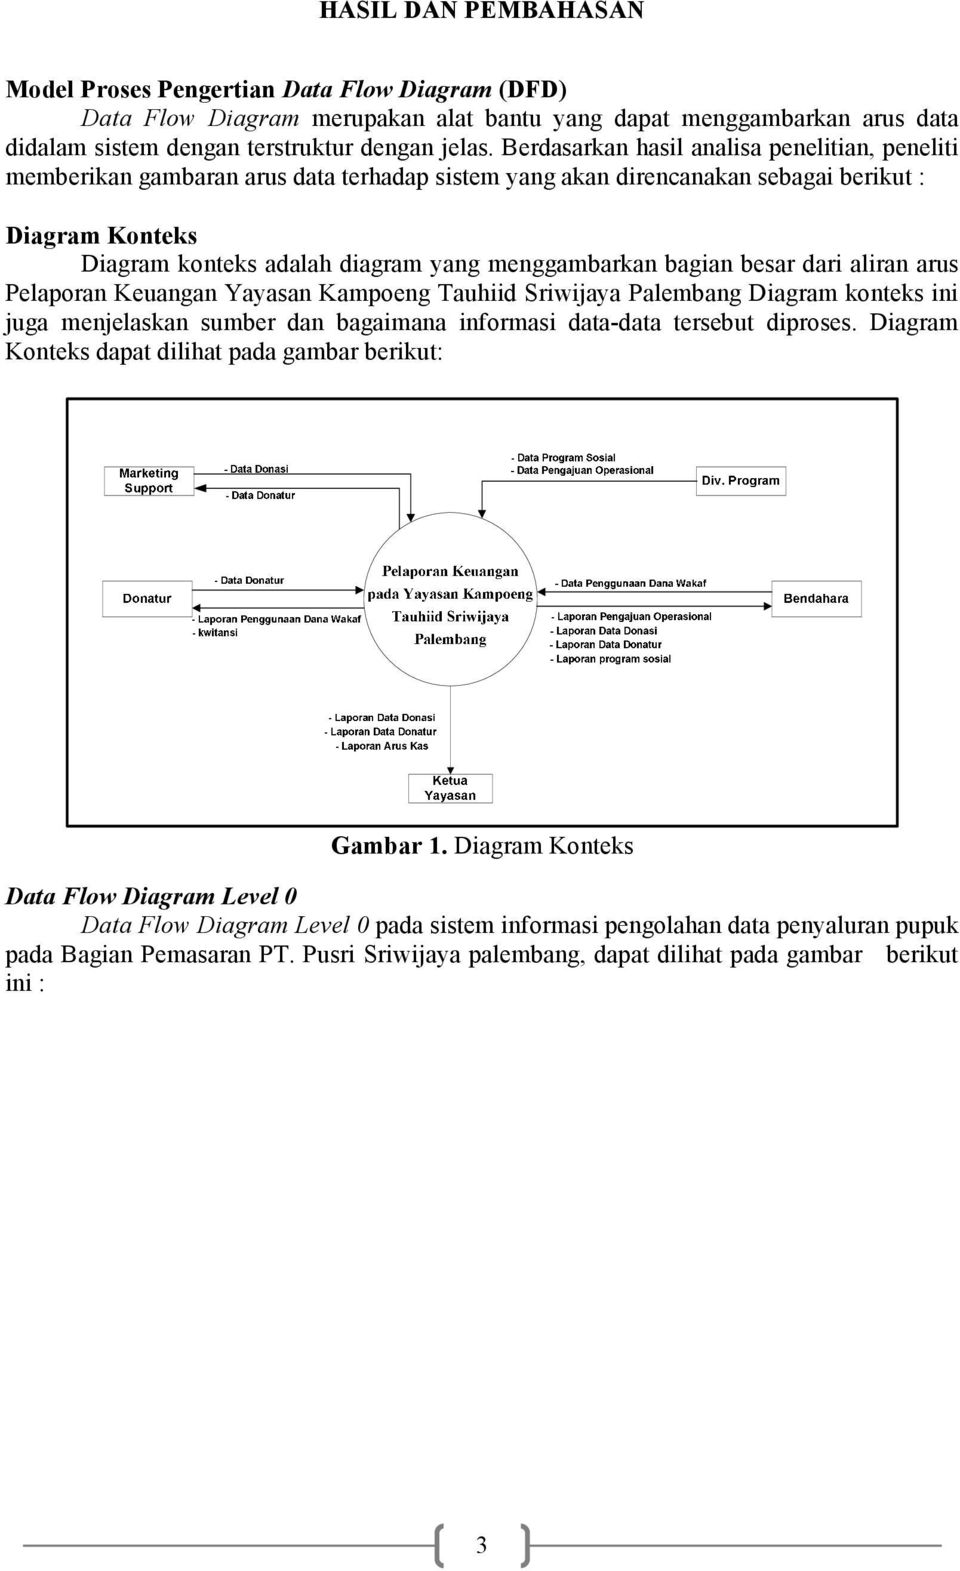 bagian besar dari aliran arus Pelaporan Keuangan Yayasan Kampoeng Tauhiid Sriwijaya Palembang Diagram konteks ini juga menjelaskan sumber dan bagaimana informasi data-data tersebut diproses.